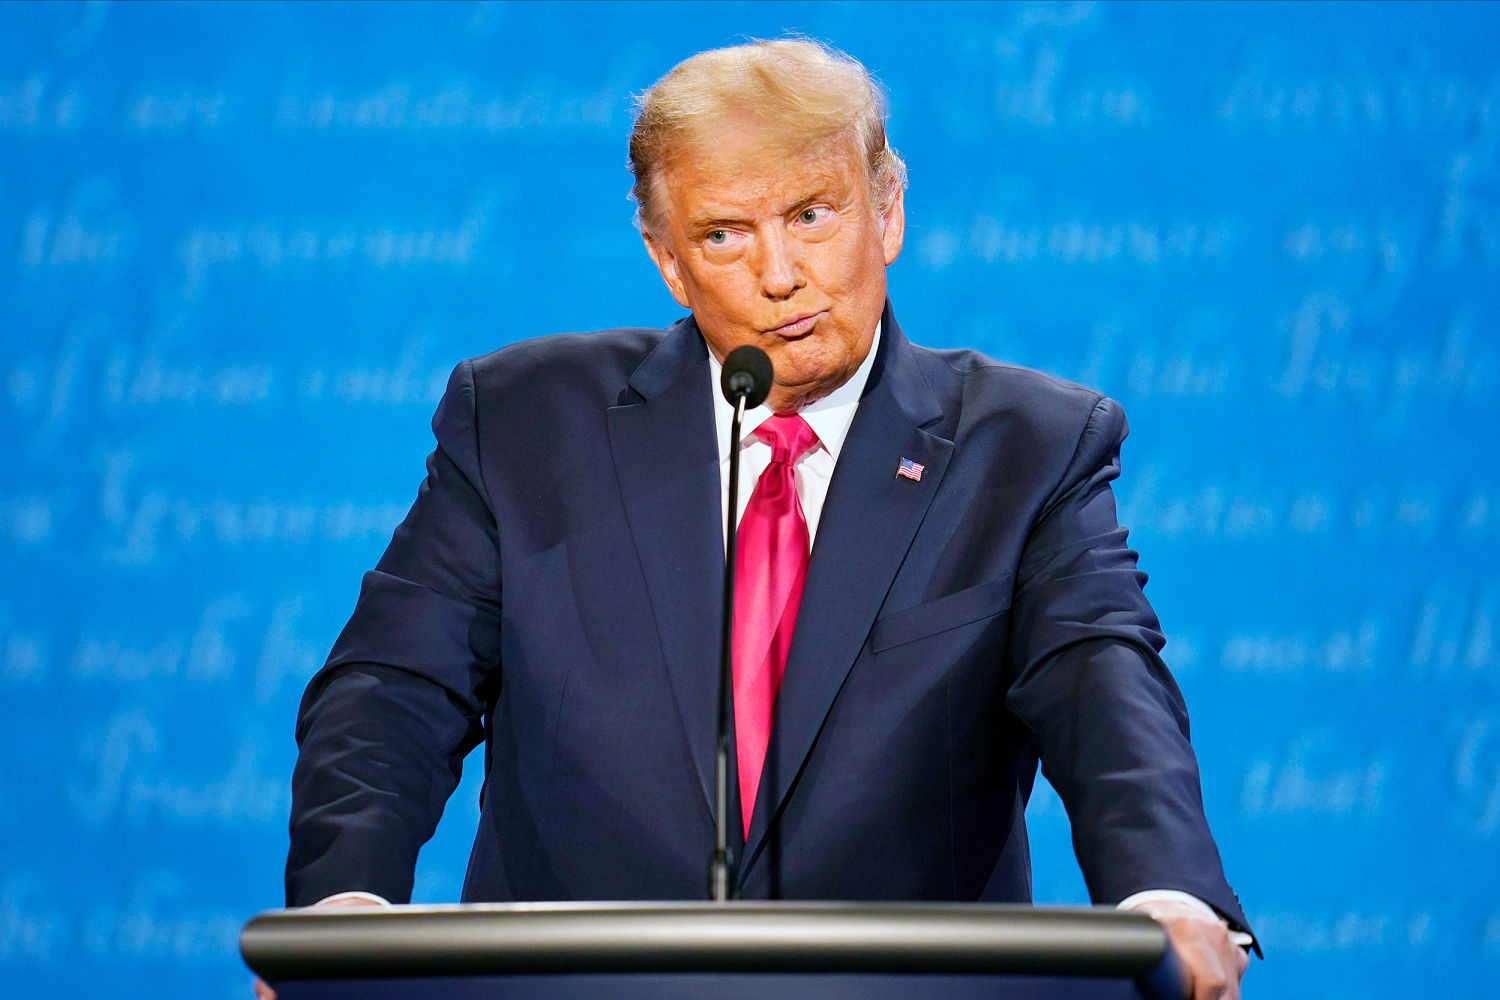 Ahead of debate, Trump tries to delegitimize a possible defeat